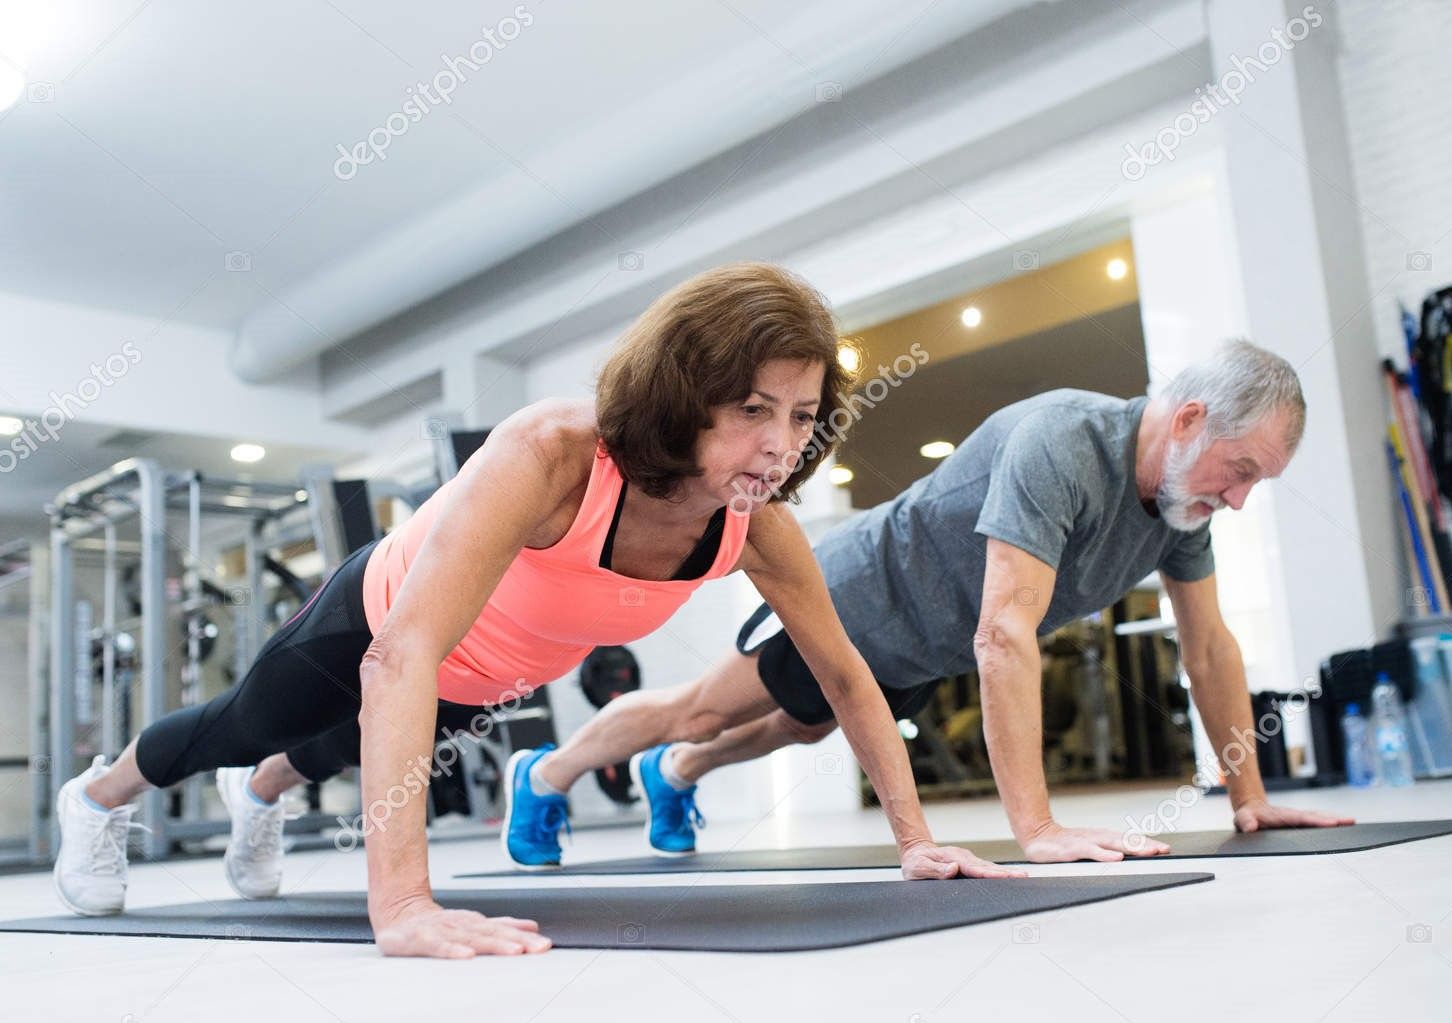 Seguir una dieta mediterránea hipocalórica y practicar ejercicio retrasa la pérdida de masa muscular asociada a la edad